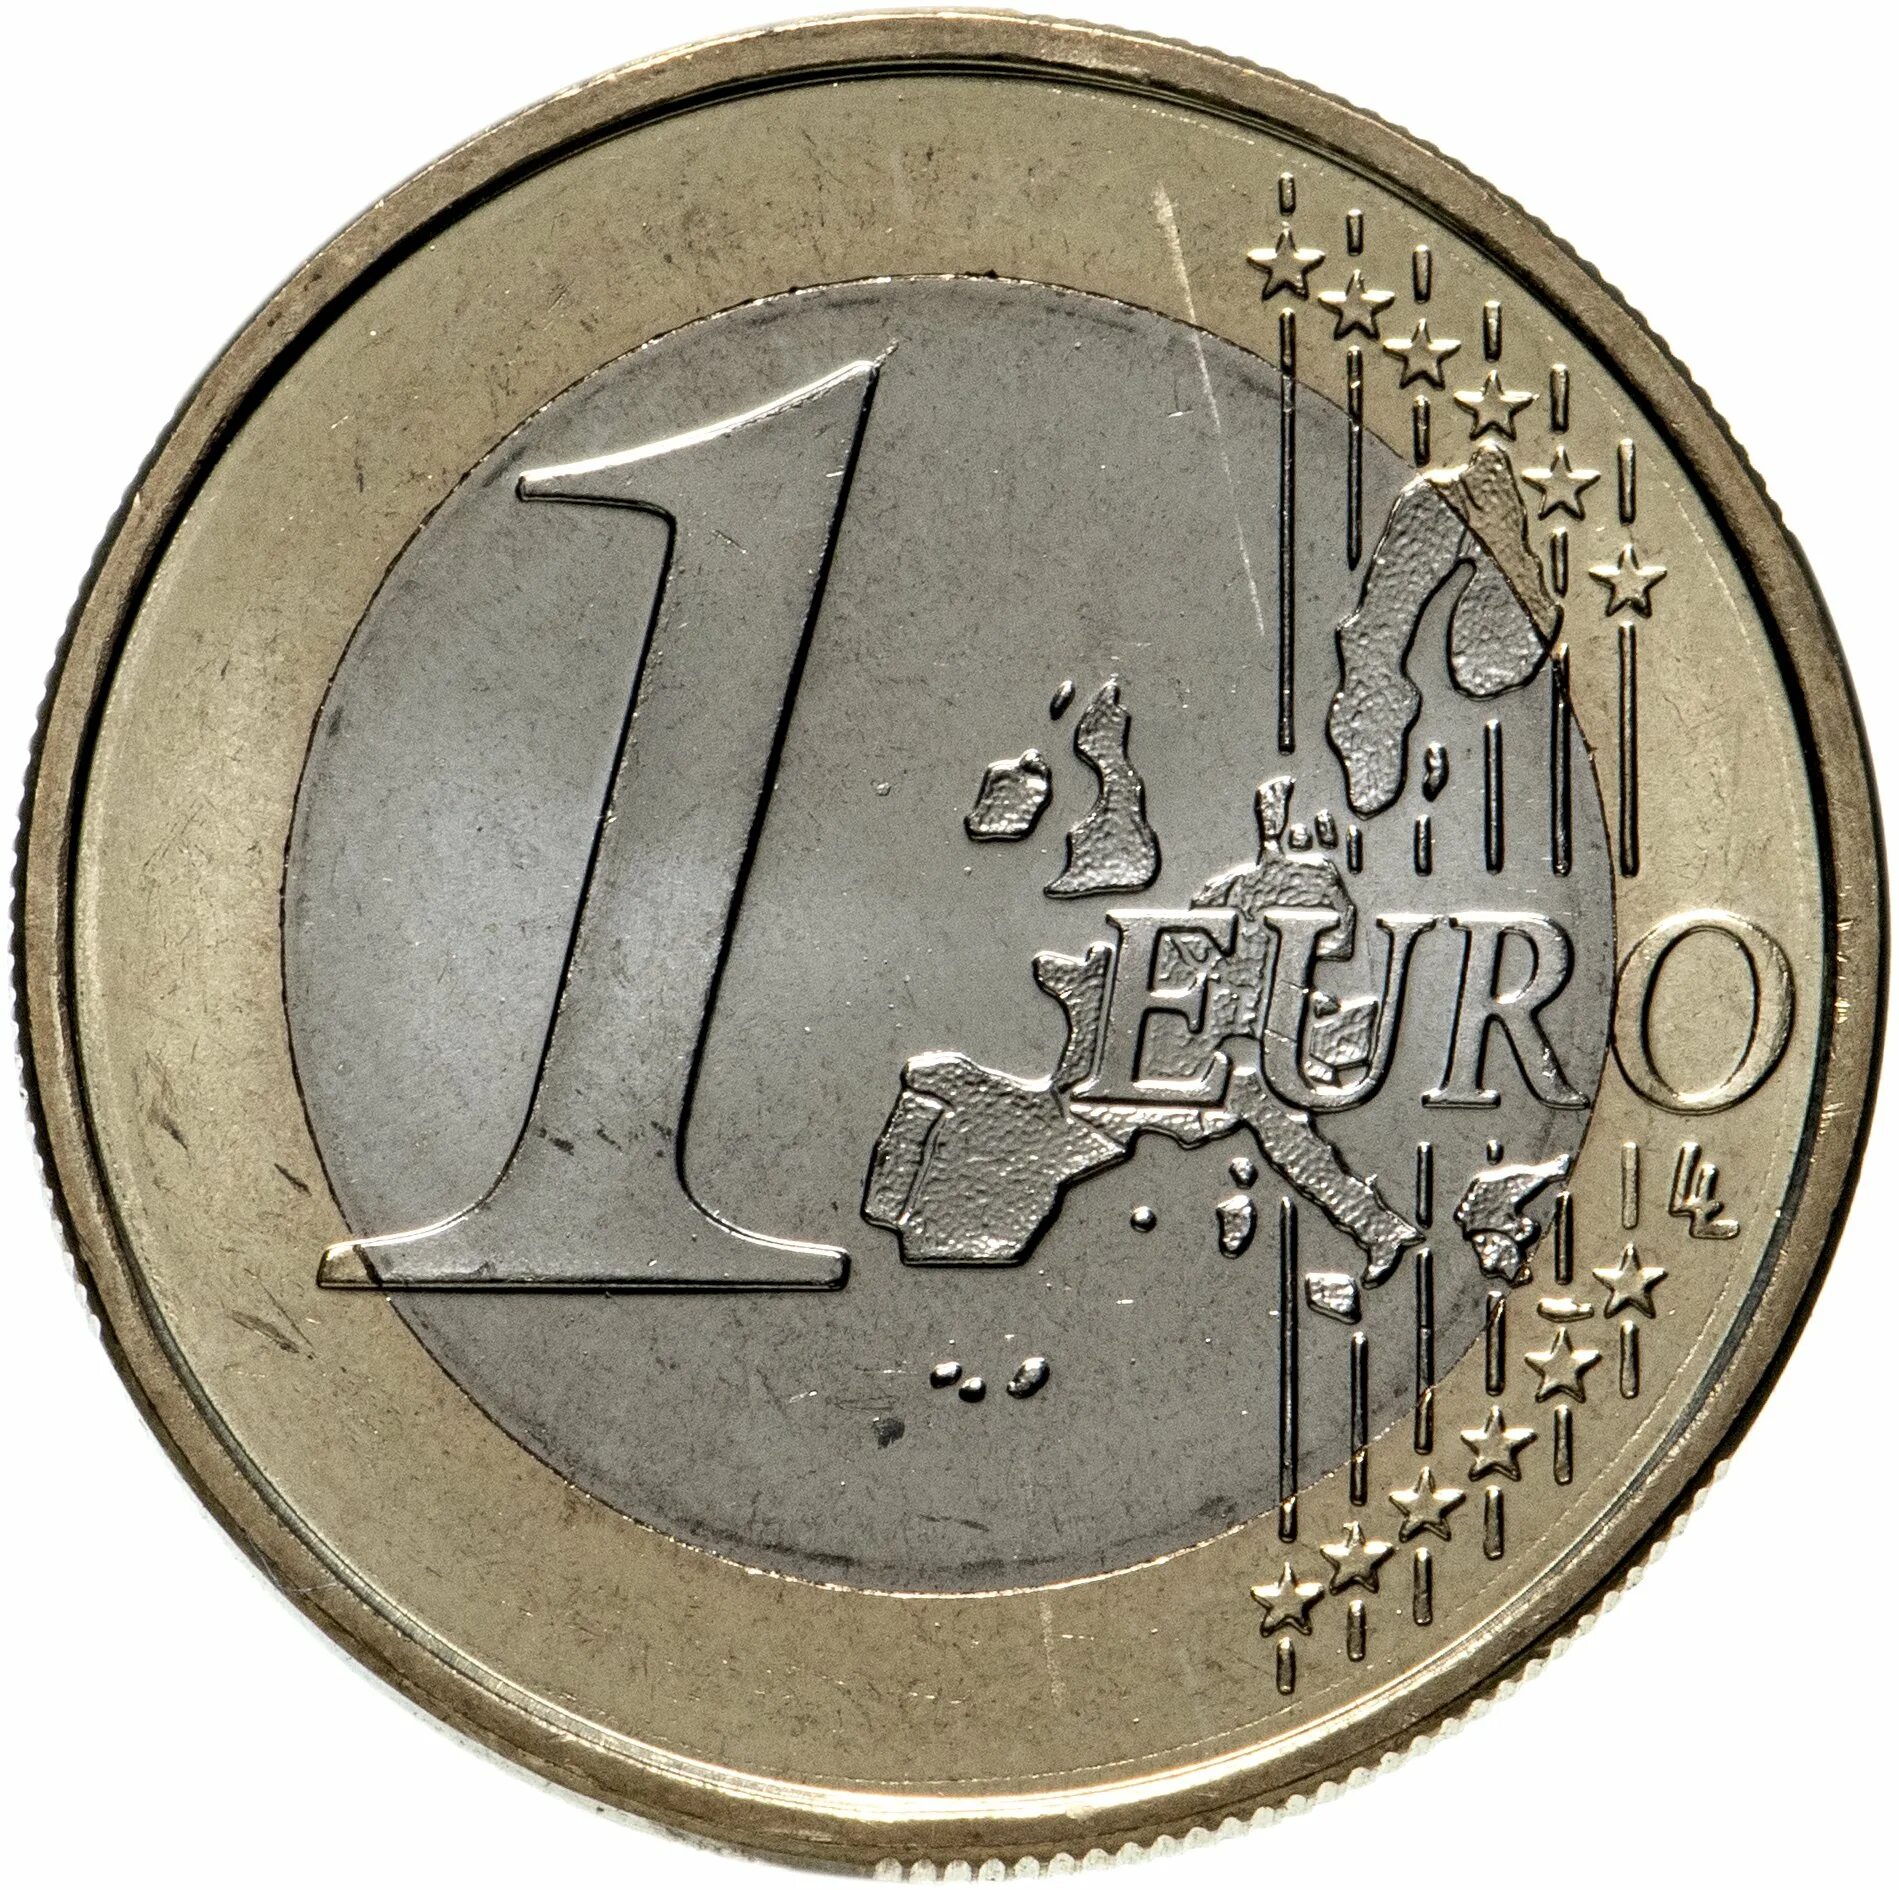 5 85 в рублях. 1 Евро 2006 Ватикан. 1 Евро монета. Монета 1 евро 2002 год. 1 Евро Испания 2002.